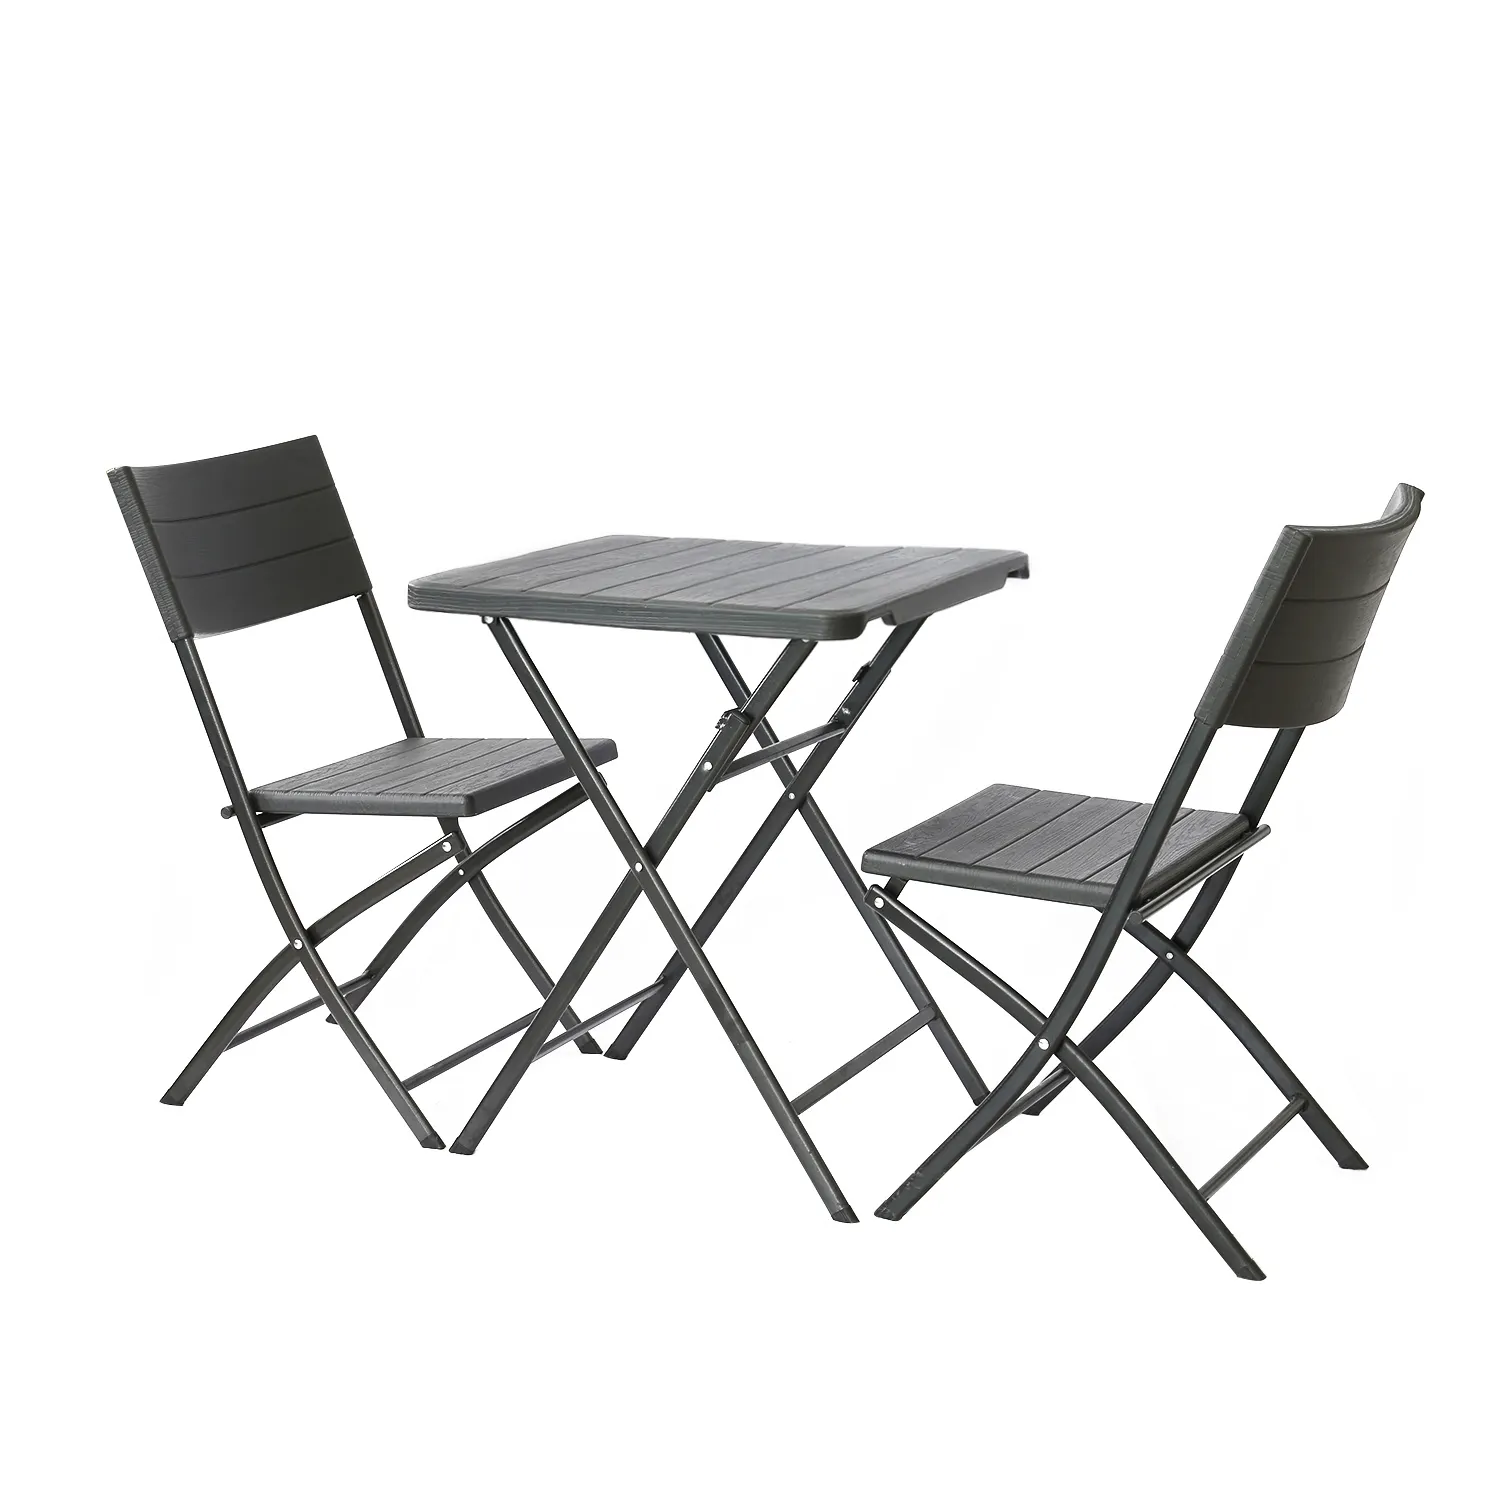 木目調のテーブルと椅子のセット。木製の質感をシミュレートし、軽量で持ち運びが可能で、折りたたみ式のデザインです。